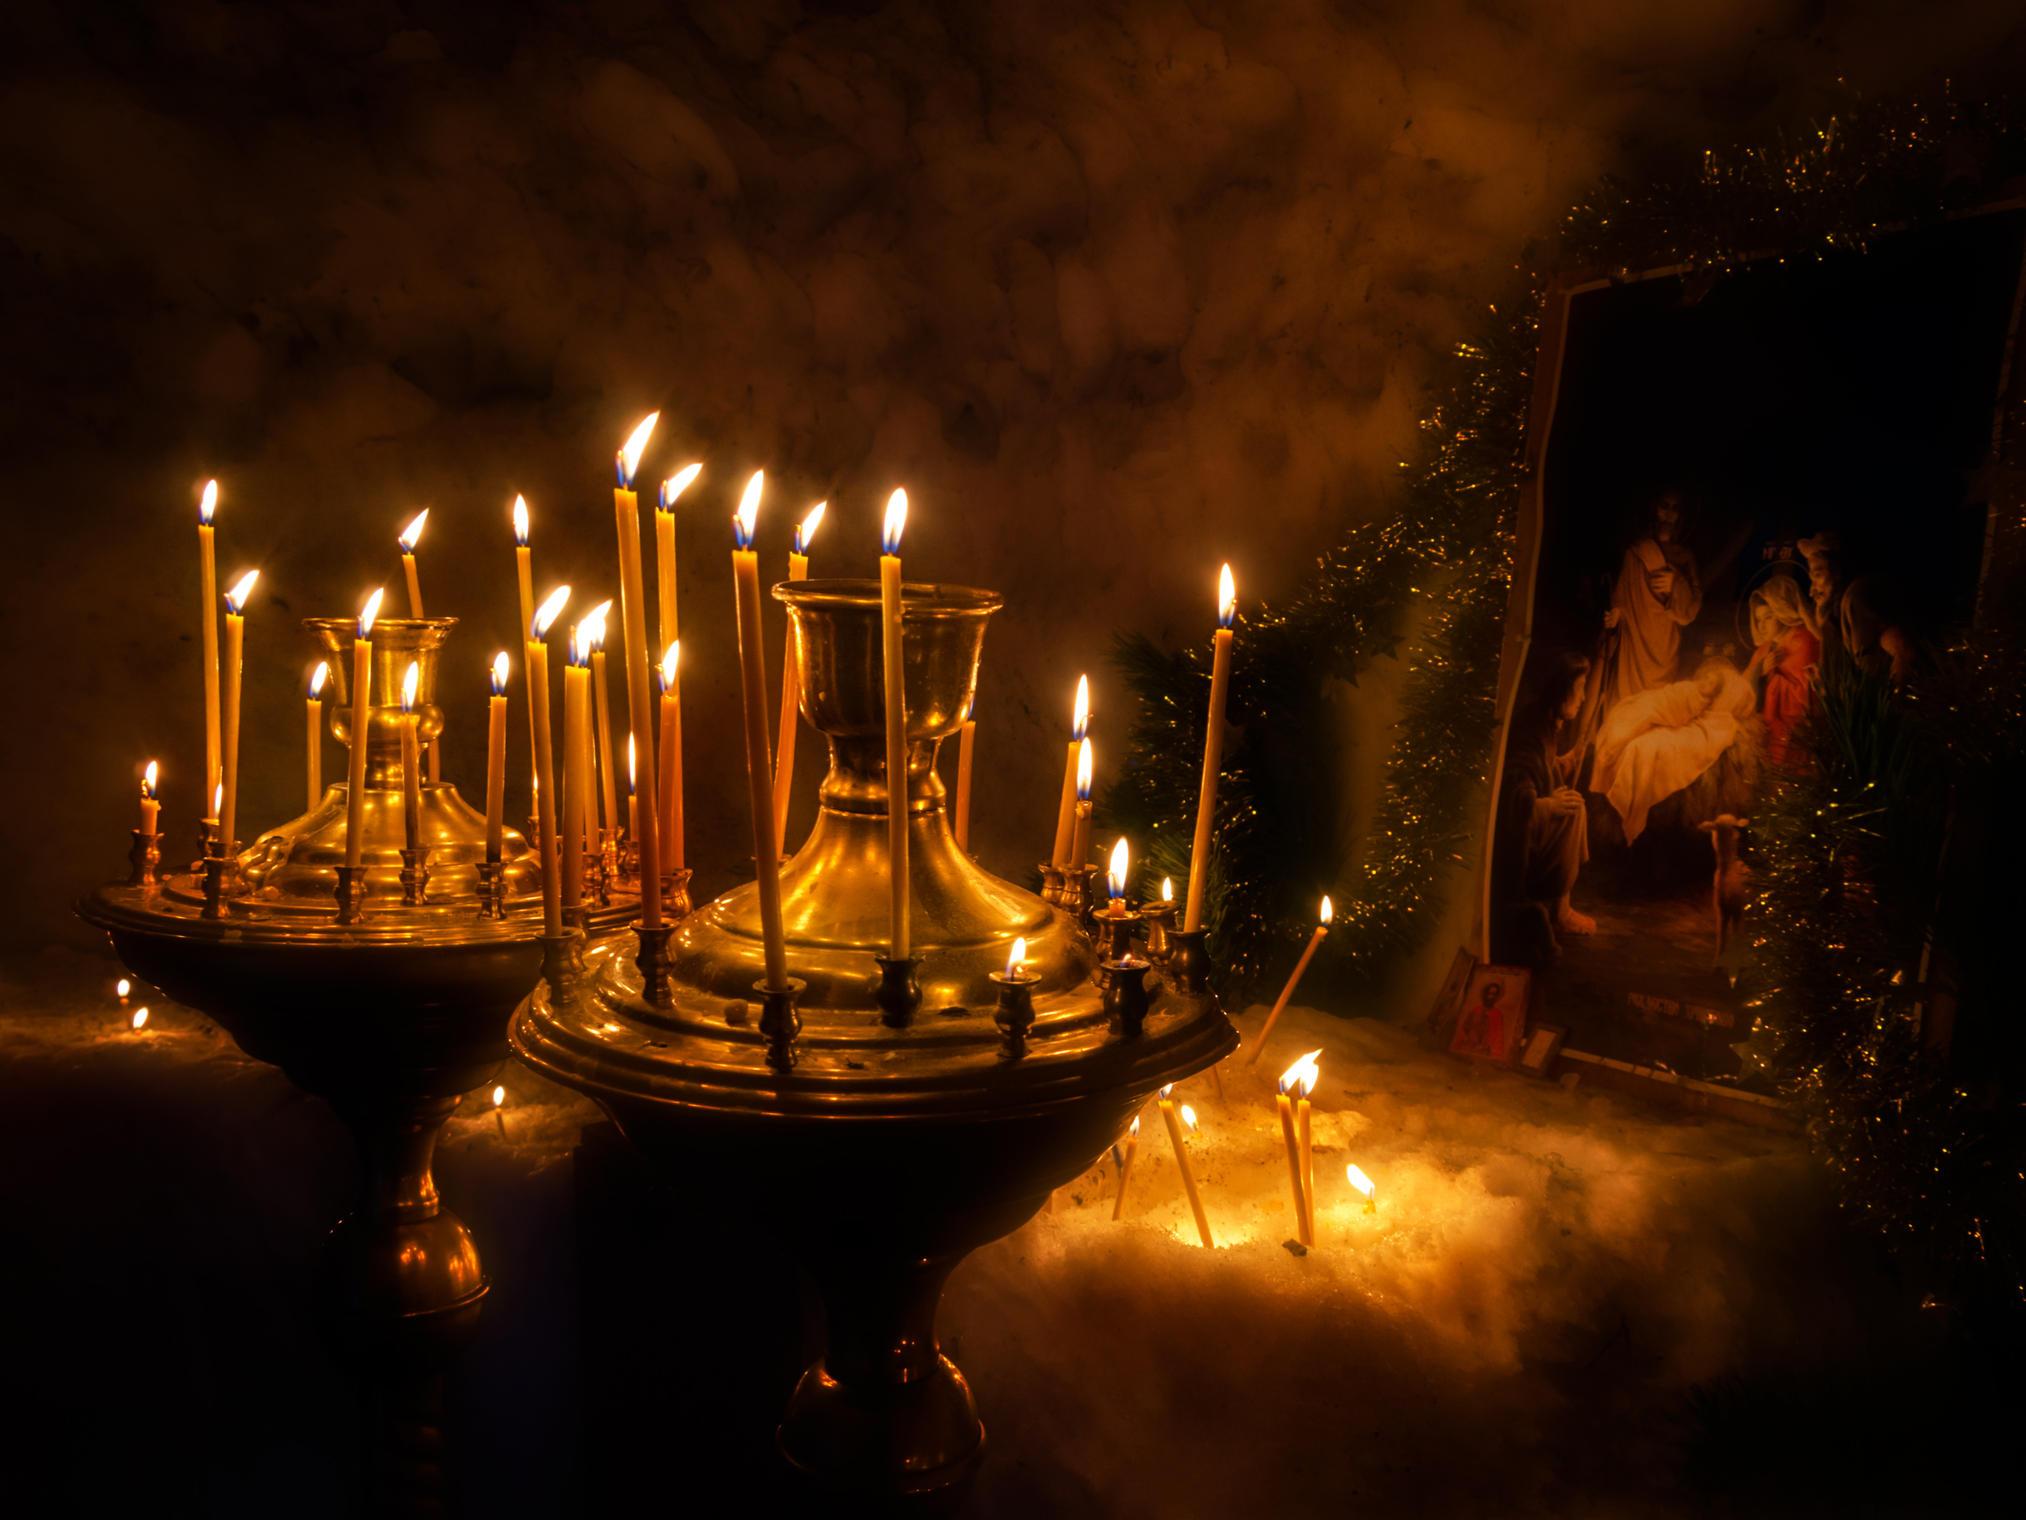 В церкви горят свечи. Свечи в храме. Горящие свечи в храме. Рождество свечи. Свеча православная.